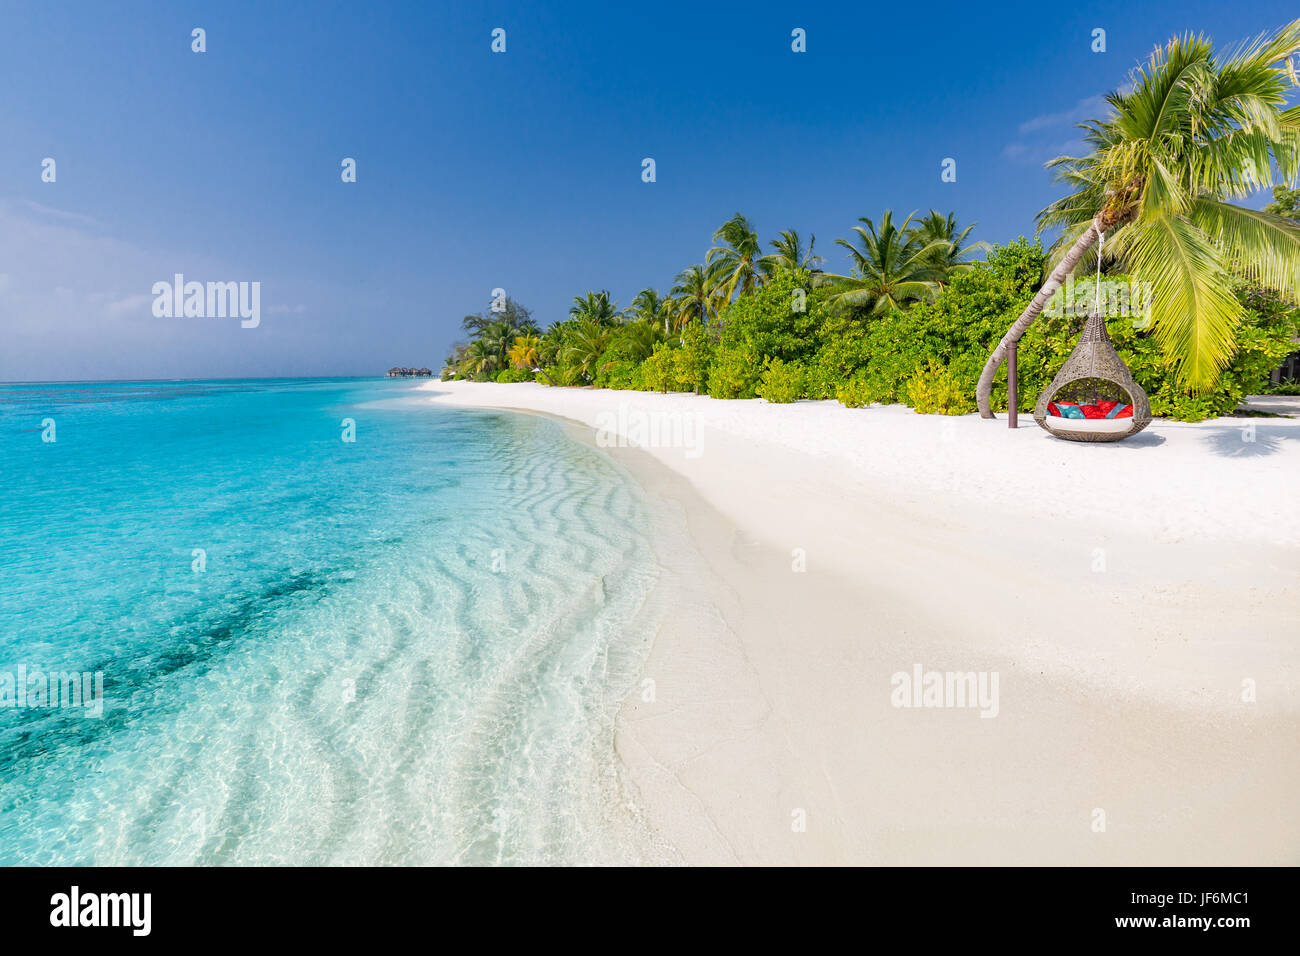 Perfekte tropische Strand. Romantische Hängematte oder Schwingen auf weißen Sandstrand und Palmen unter blauem Himmel. Inspirational Sommer und Urlaub Konzept Stockfoto